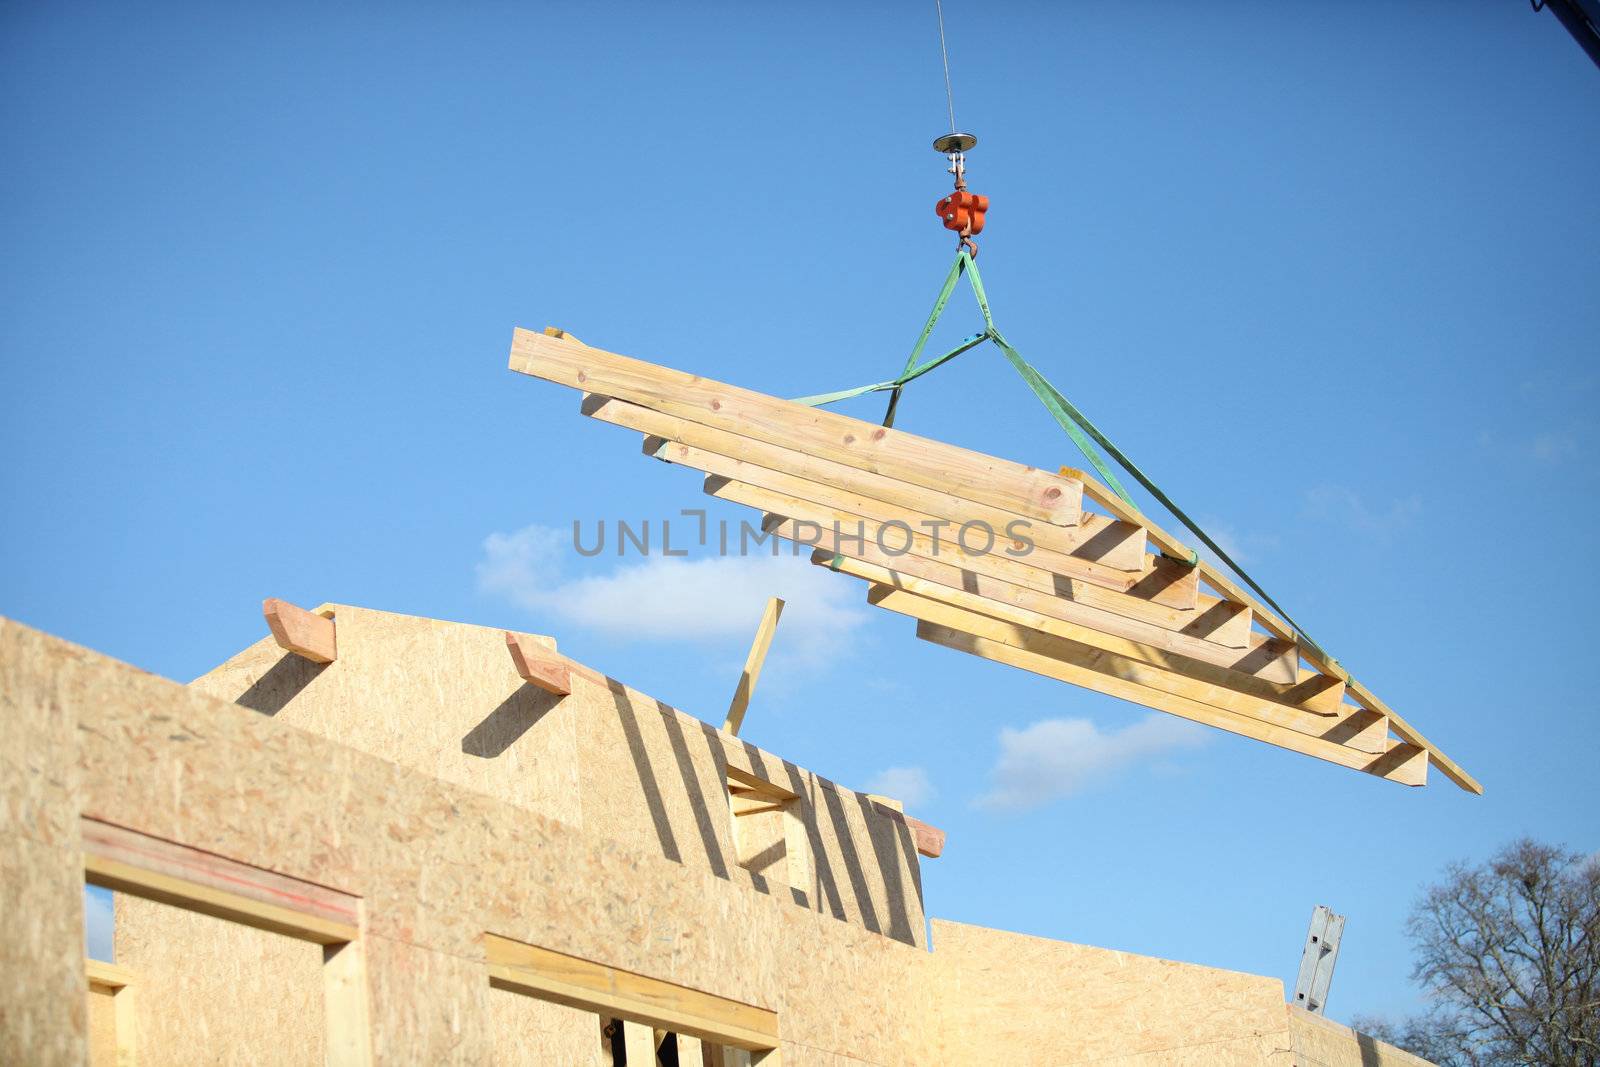 Crane lifting building materials